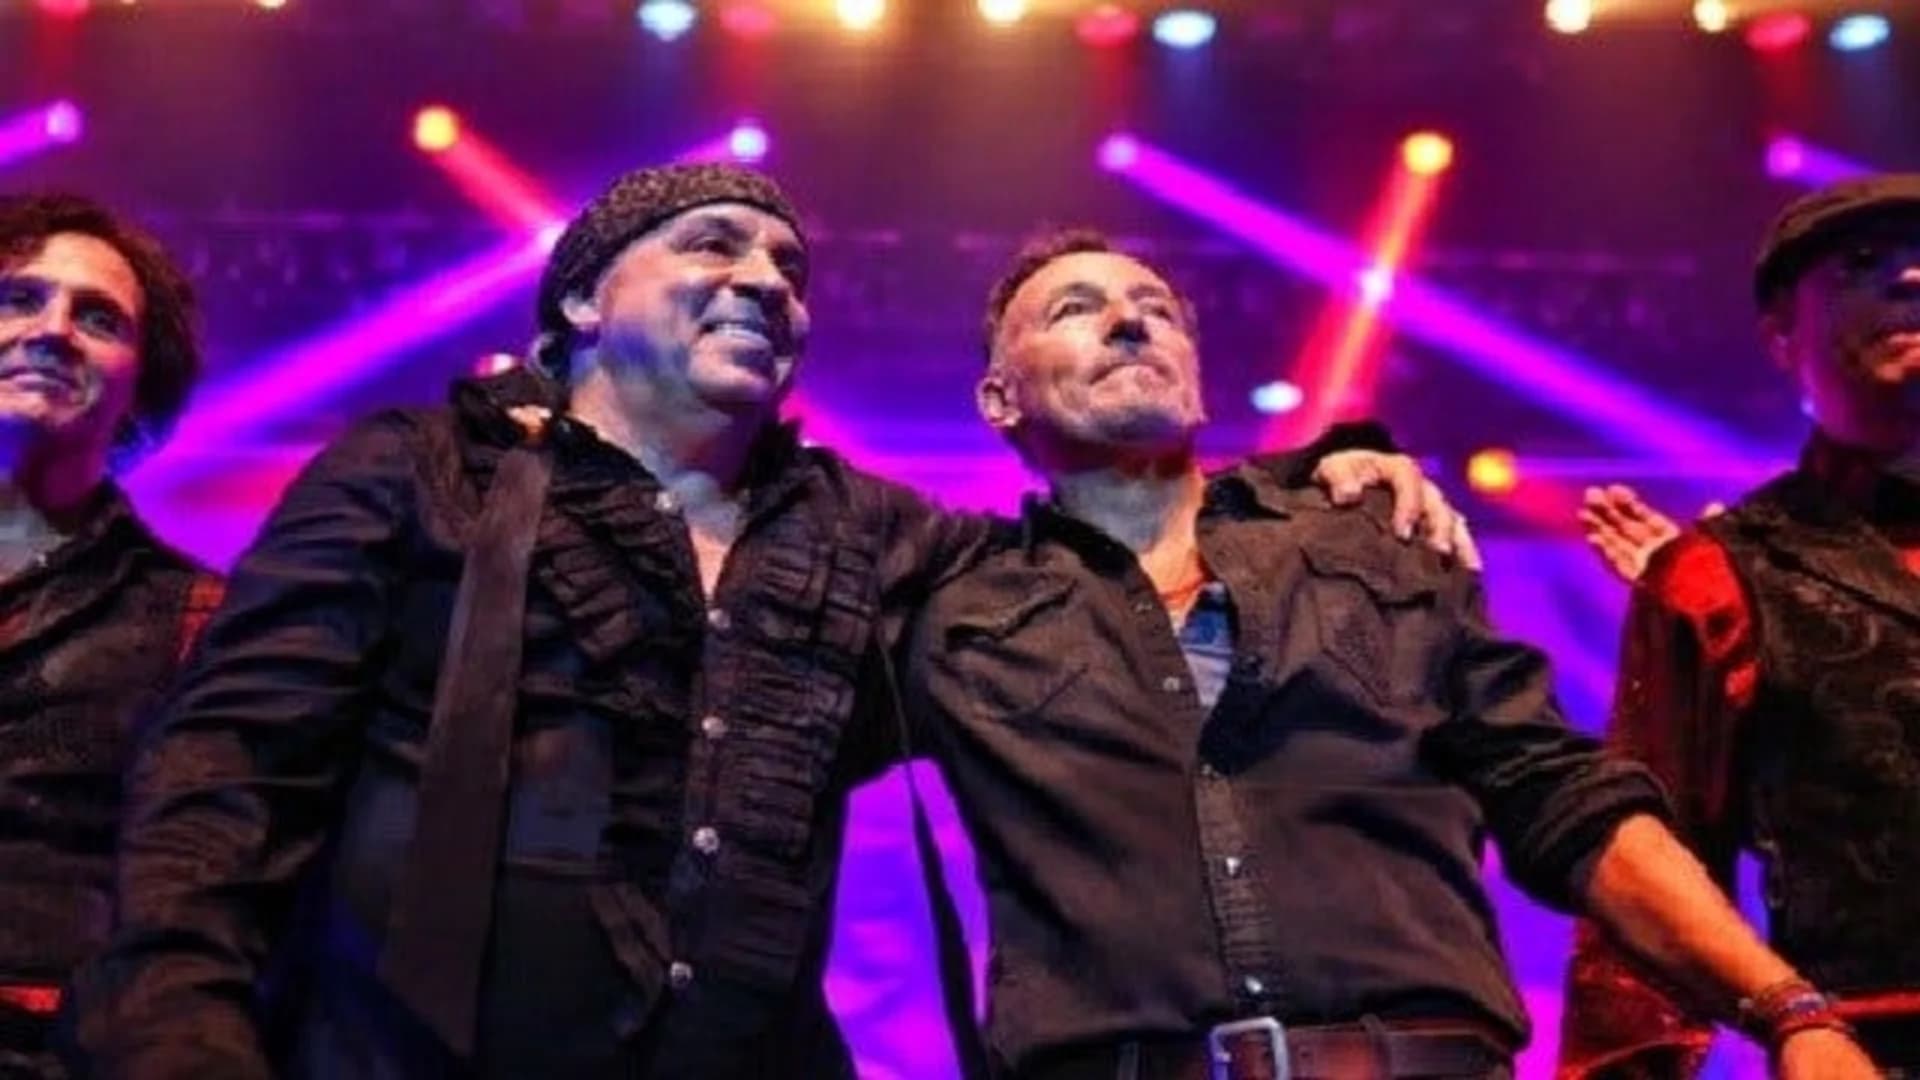 Bruce Springsteen surprises NJ audience at Van Zandt concert